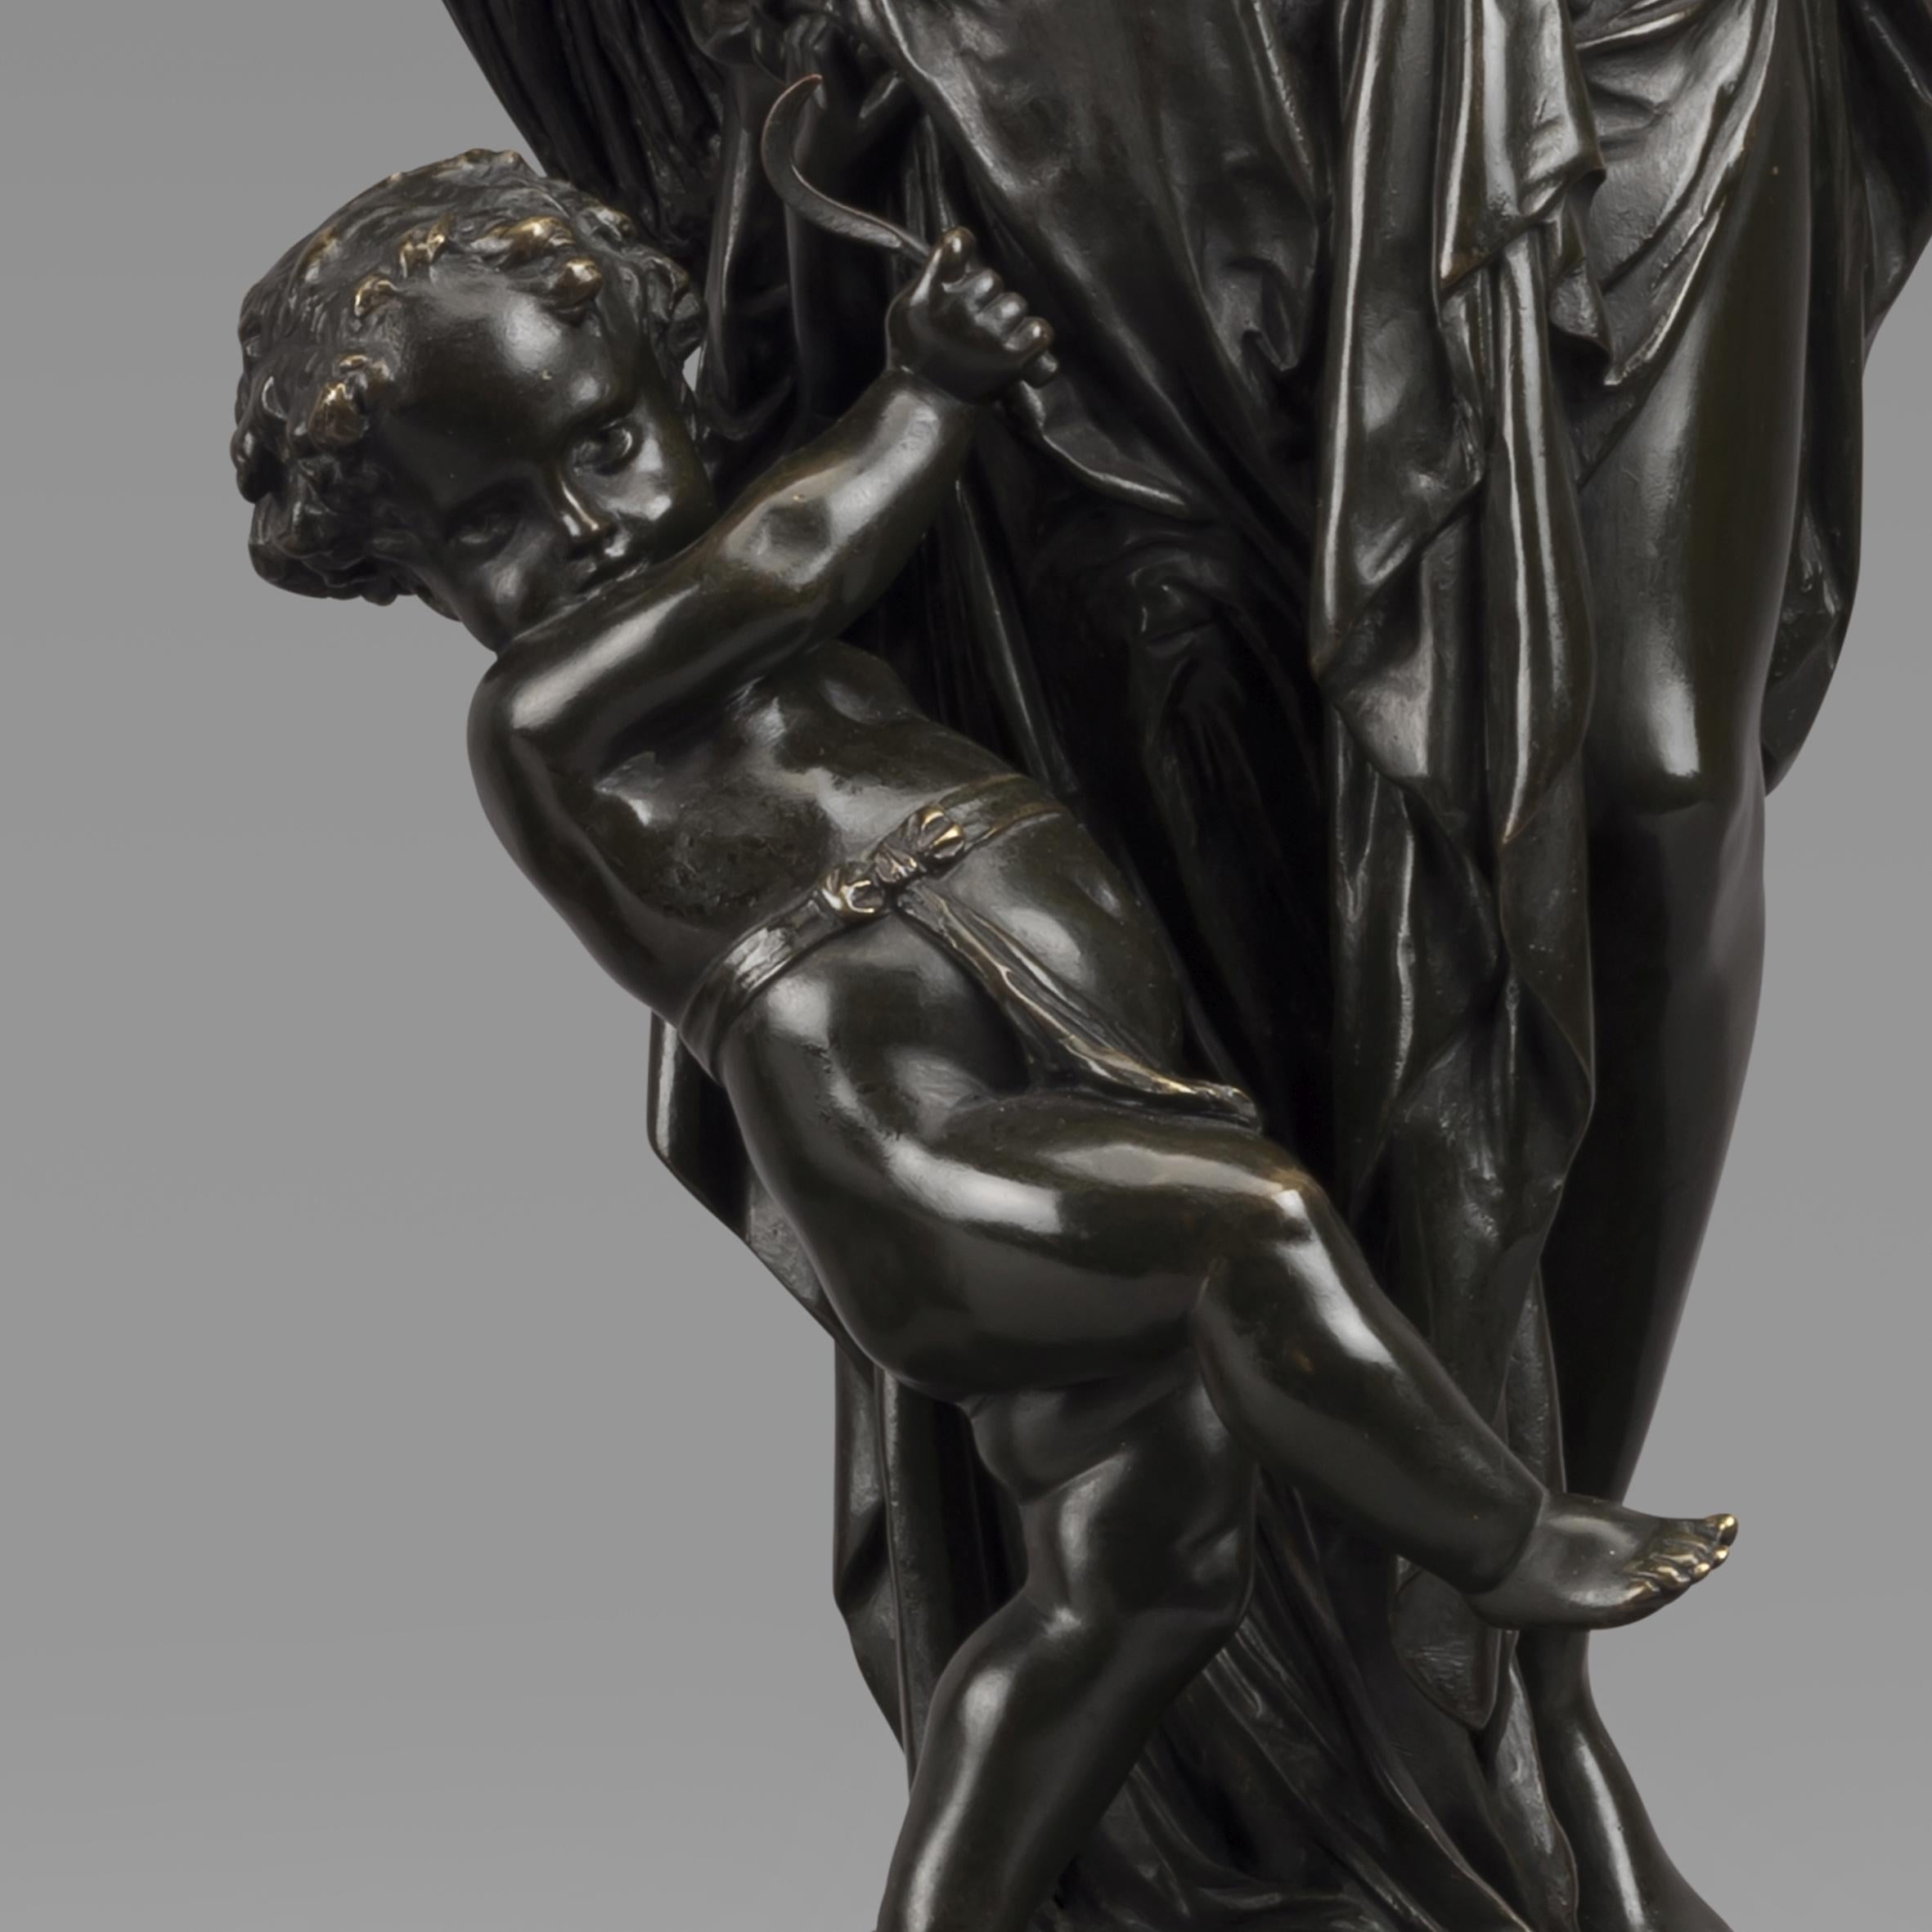 Patinated Le Printemps et L'Eté, Bronze Figures After Carrier-Belleuse. French, circa 1870